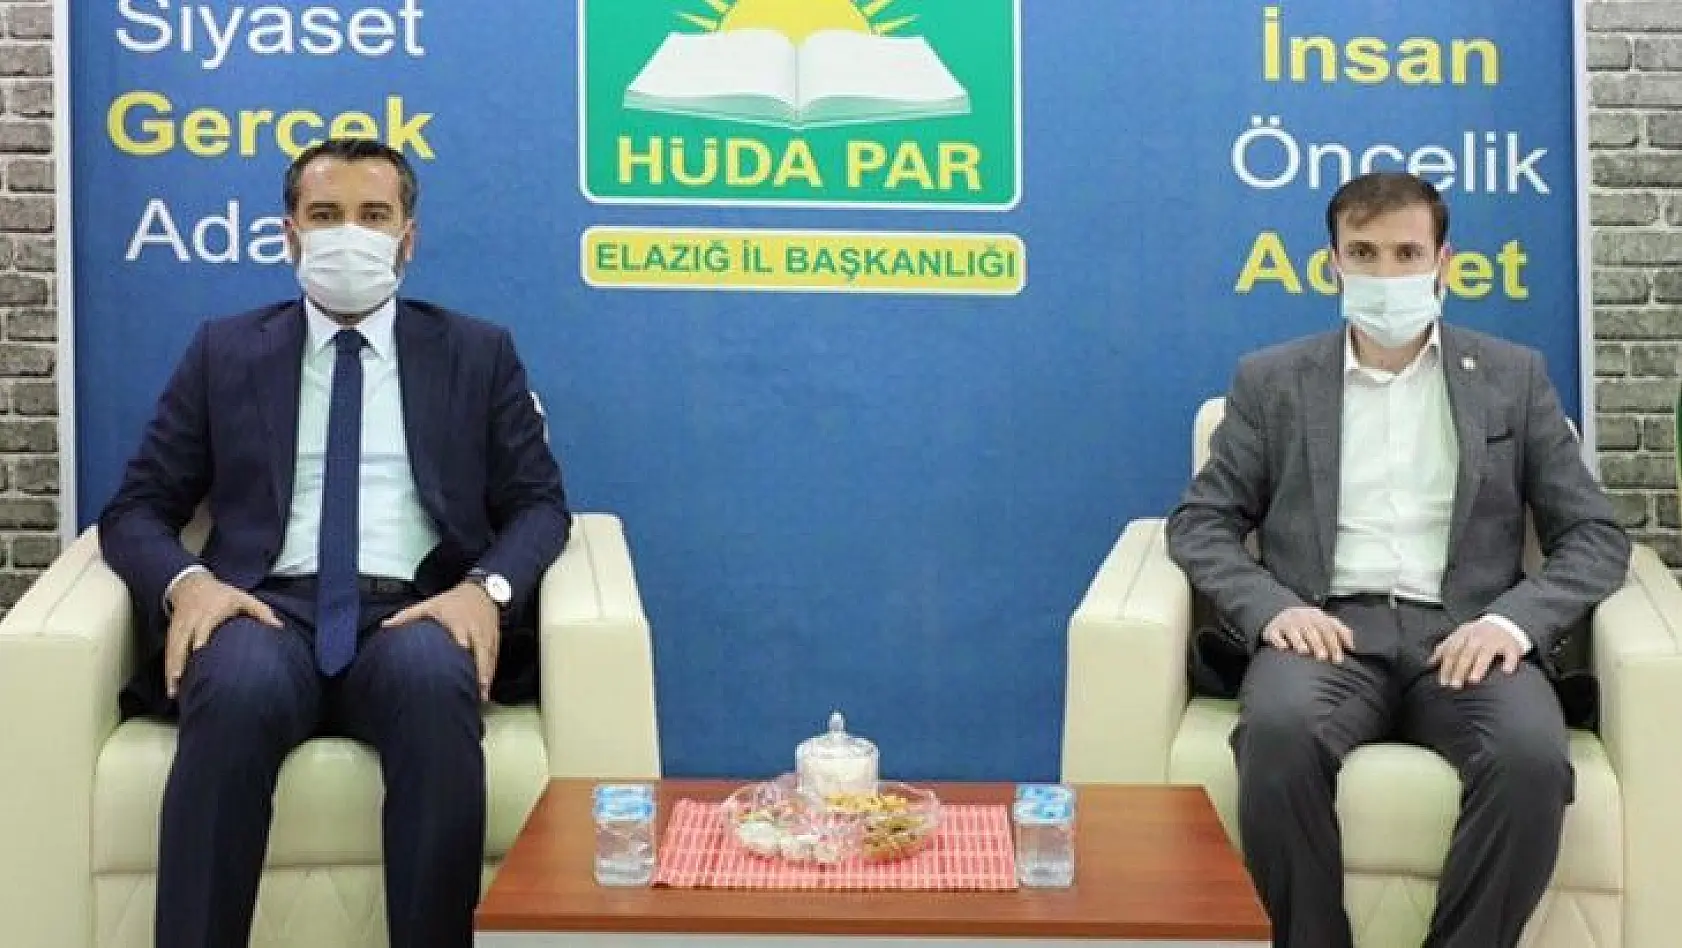 Elazığ Belediye Başkanı HÜDA PAR Elazığ İl Başkanlığını Ziyaret Etti